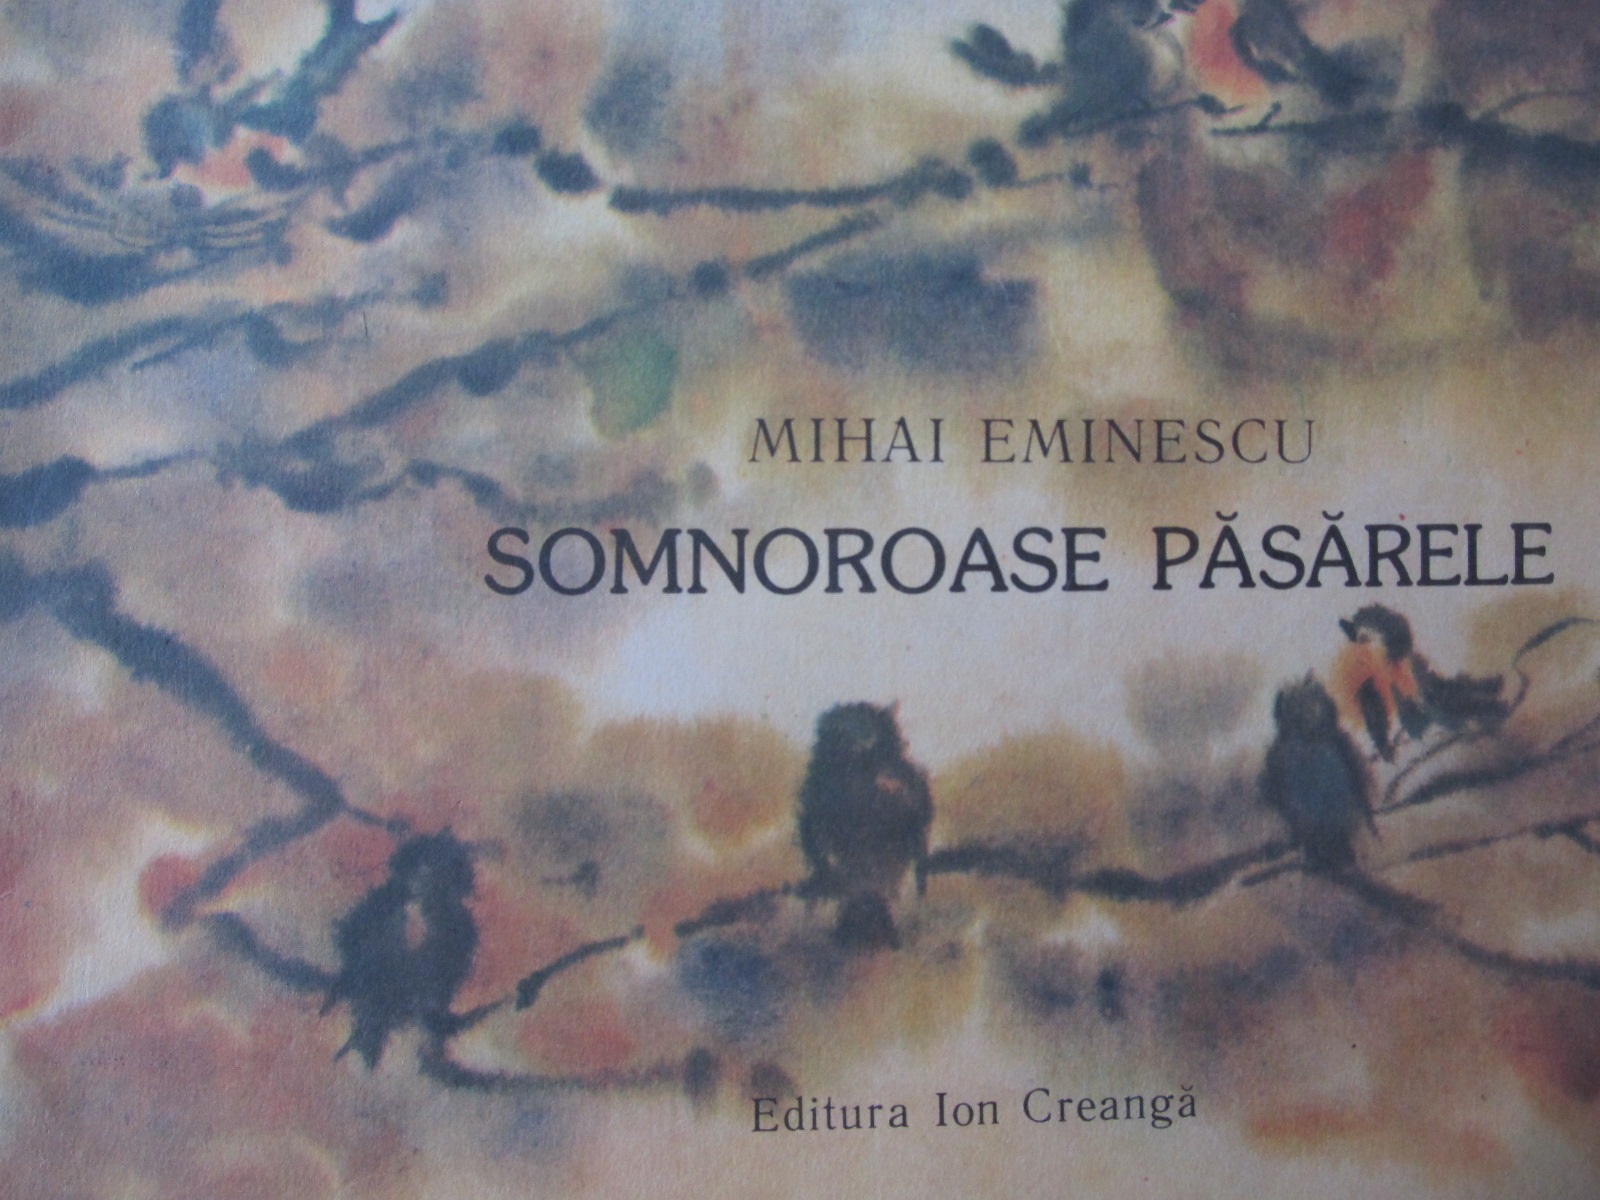 Somnoroase pasarele - Mihai Eminescu | Detalii carte